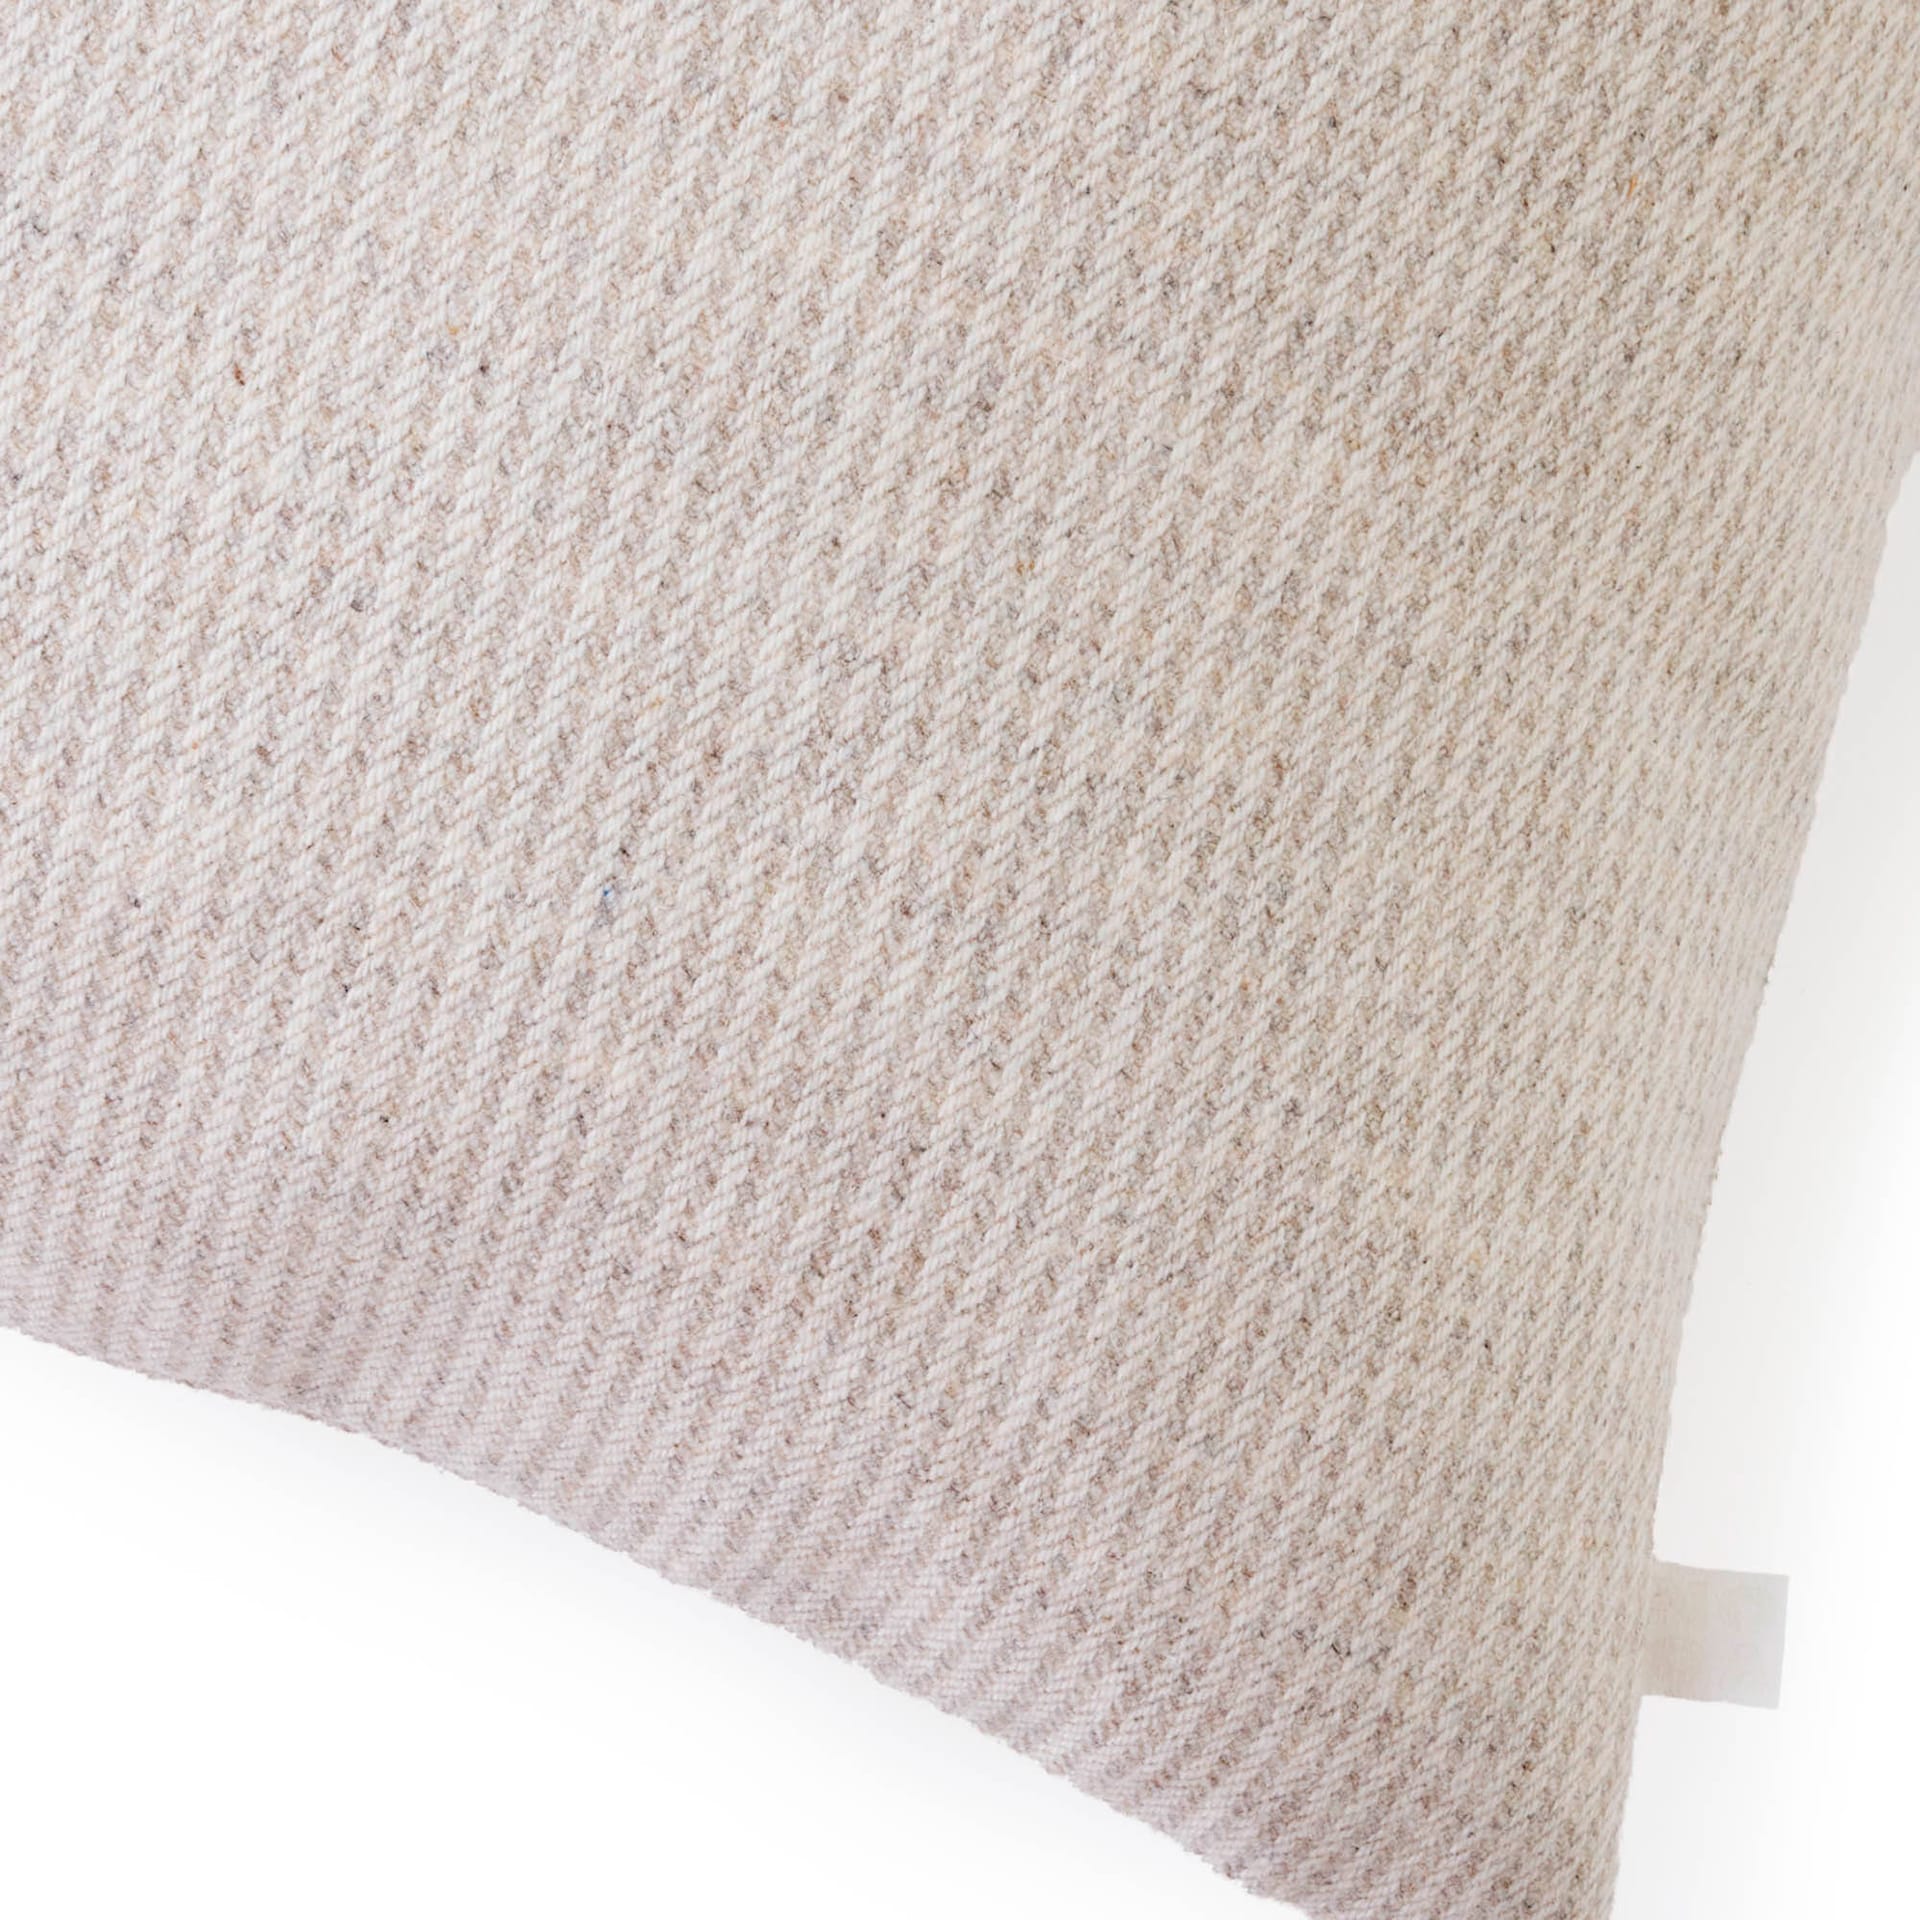 Wool Stripe Cushion - NO GA - NO GA